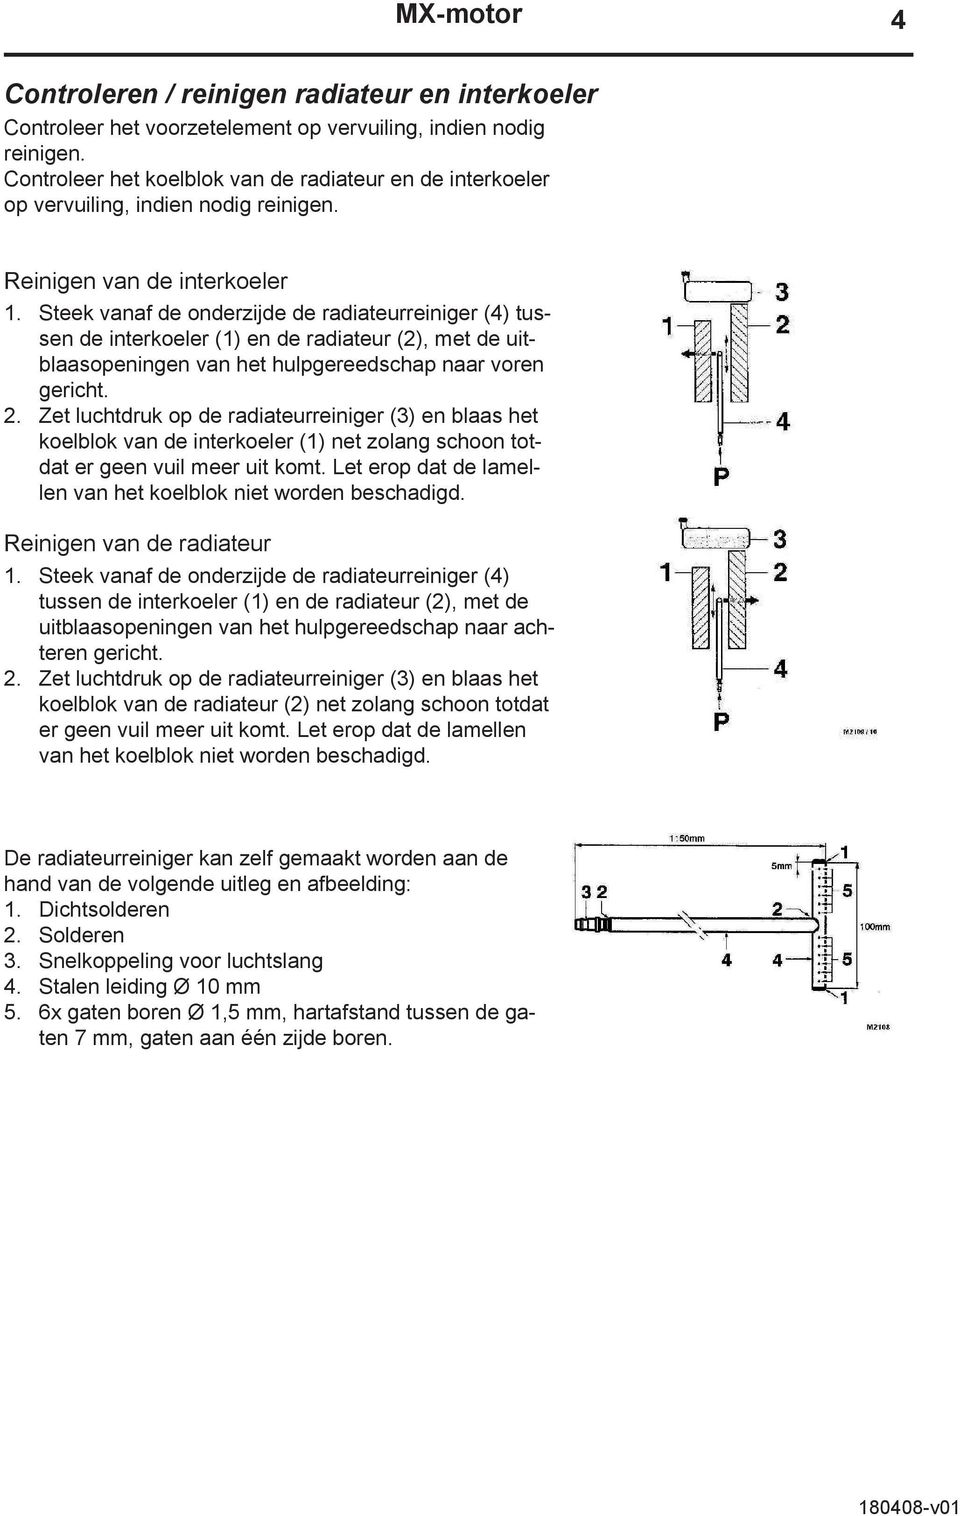 Steek vanaf de onderzijde de radiateurreiniger (4) tussen de interkoeler (1) en de radiateur (2), met de uitblaasopeningen van het hulpgereedschap naar voren gericht. 2.